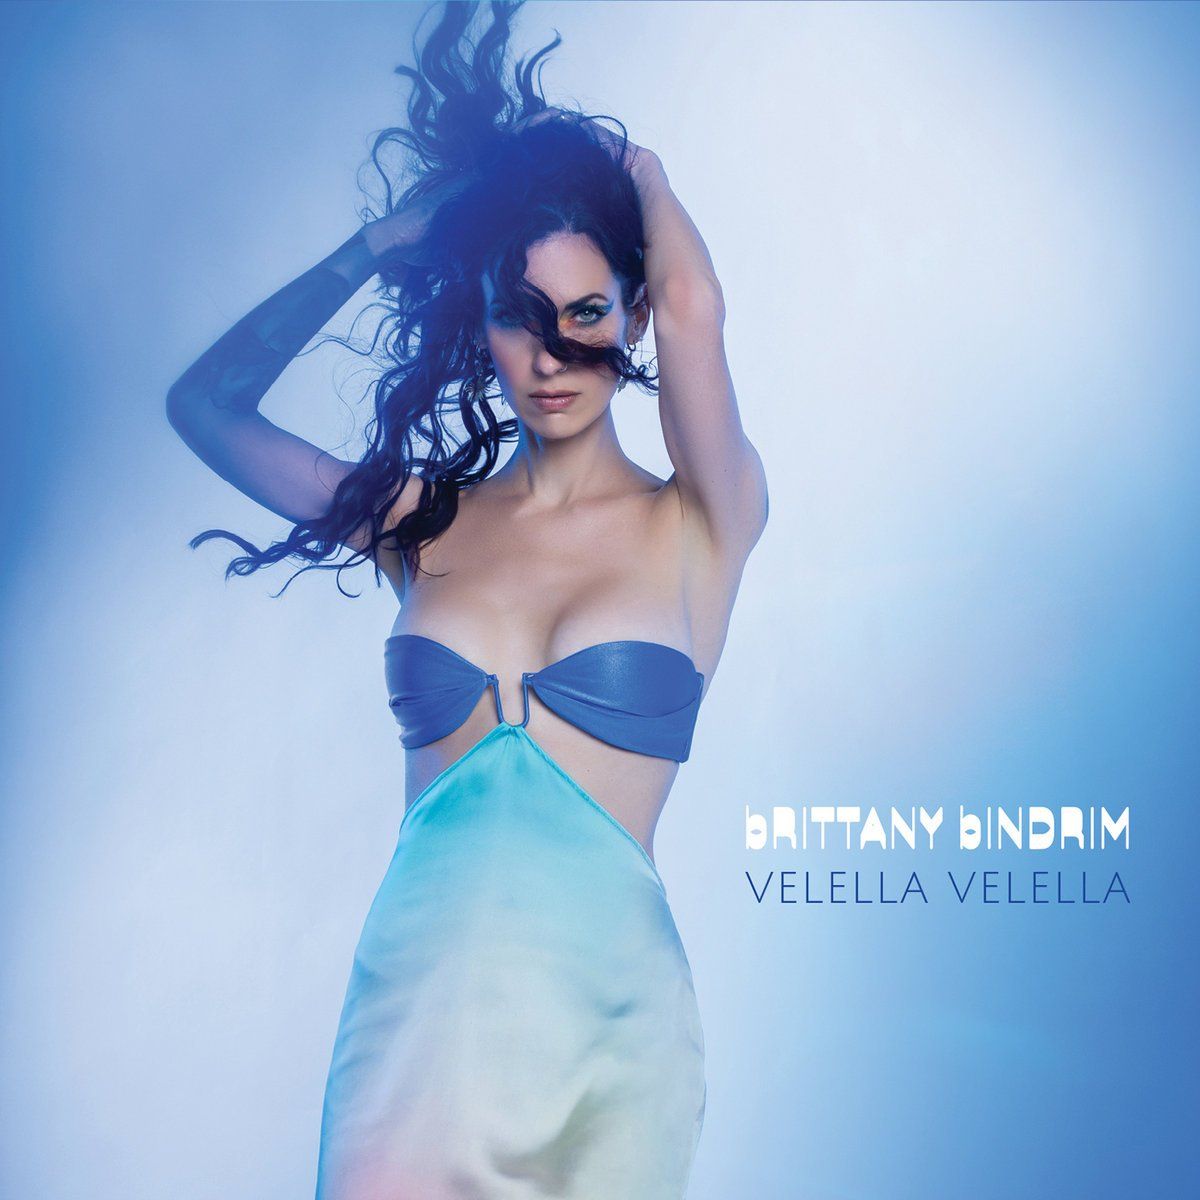 Listen to Chicago Dark Industrial Pop Artist Brittany Bindrim’s “Velella Velella” LP